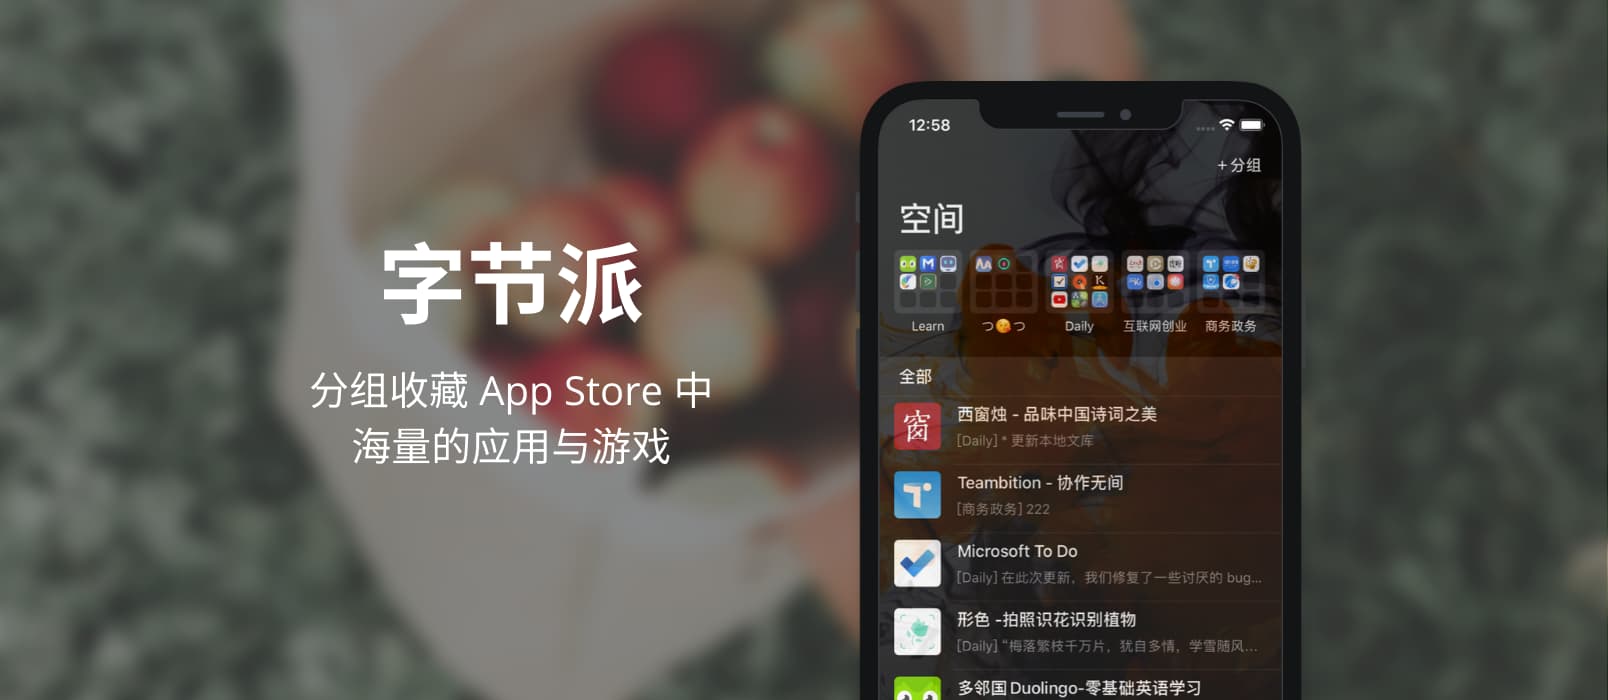 字节派 - 收藏 App Store 应用的 iOS 应用 1